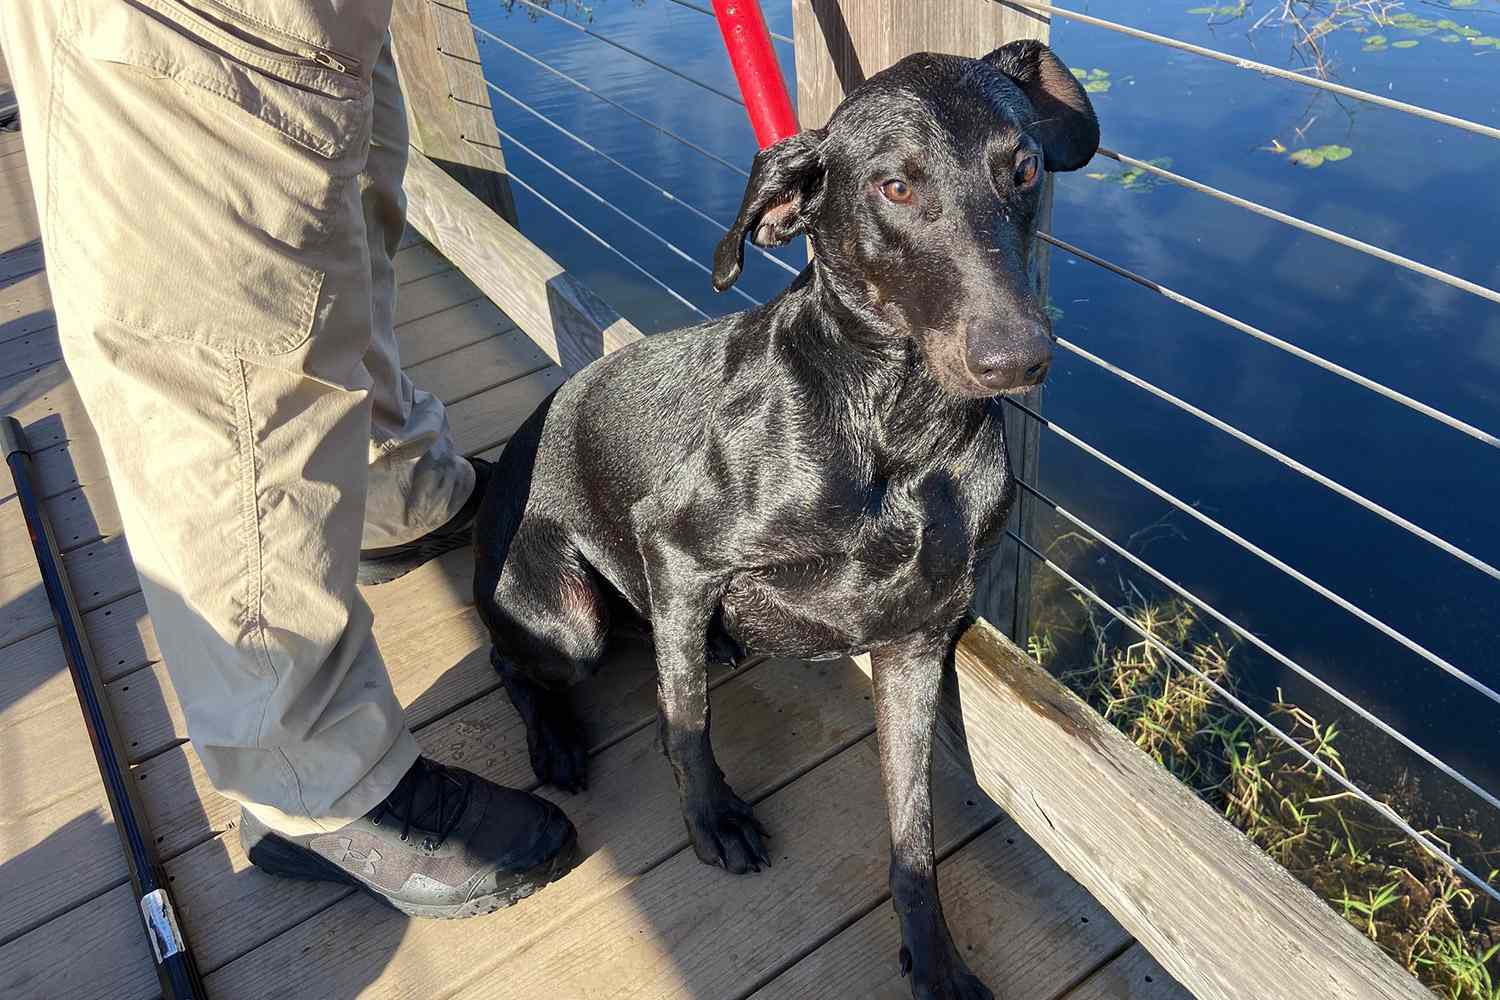 Hund aus Florida steckt in Teich fest und wird gerettet, nachdem Kind auf dem Weg zur Schule das verzweifelte Haustier entdeckt hat